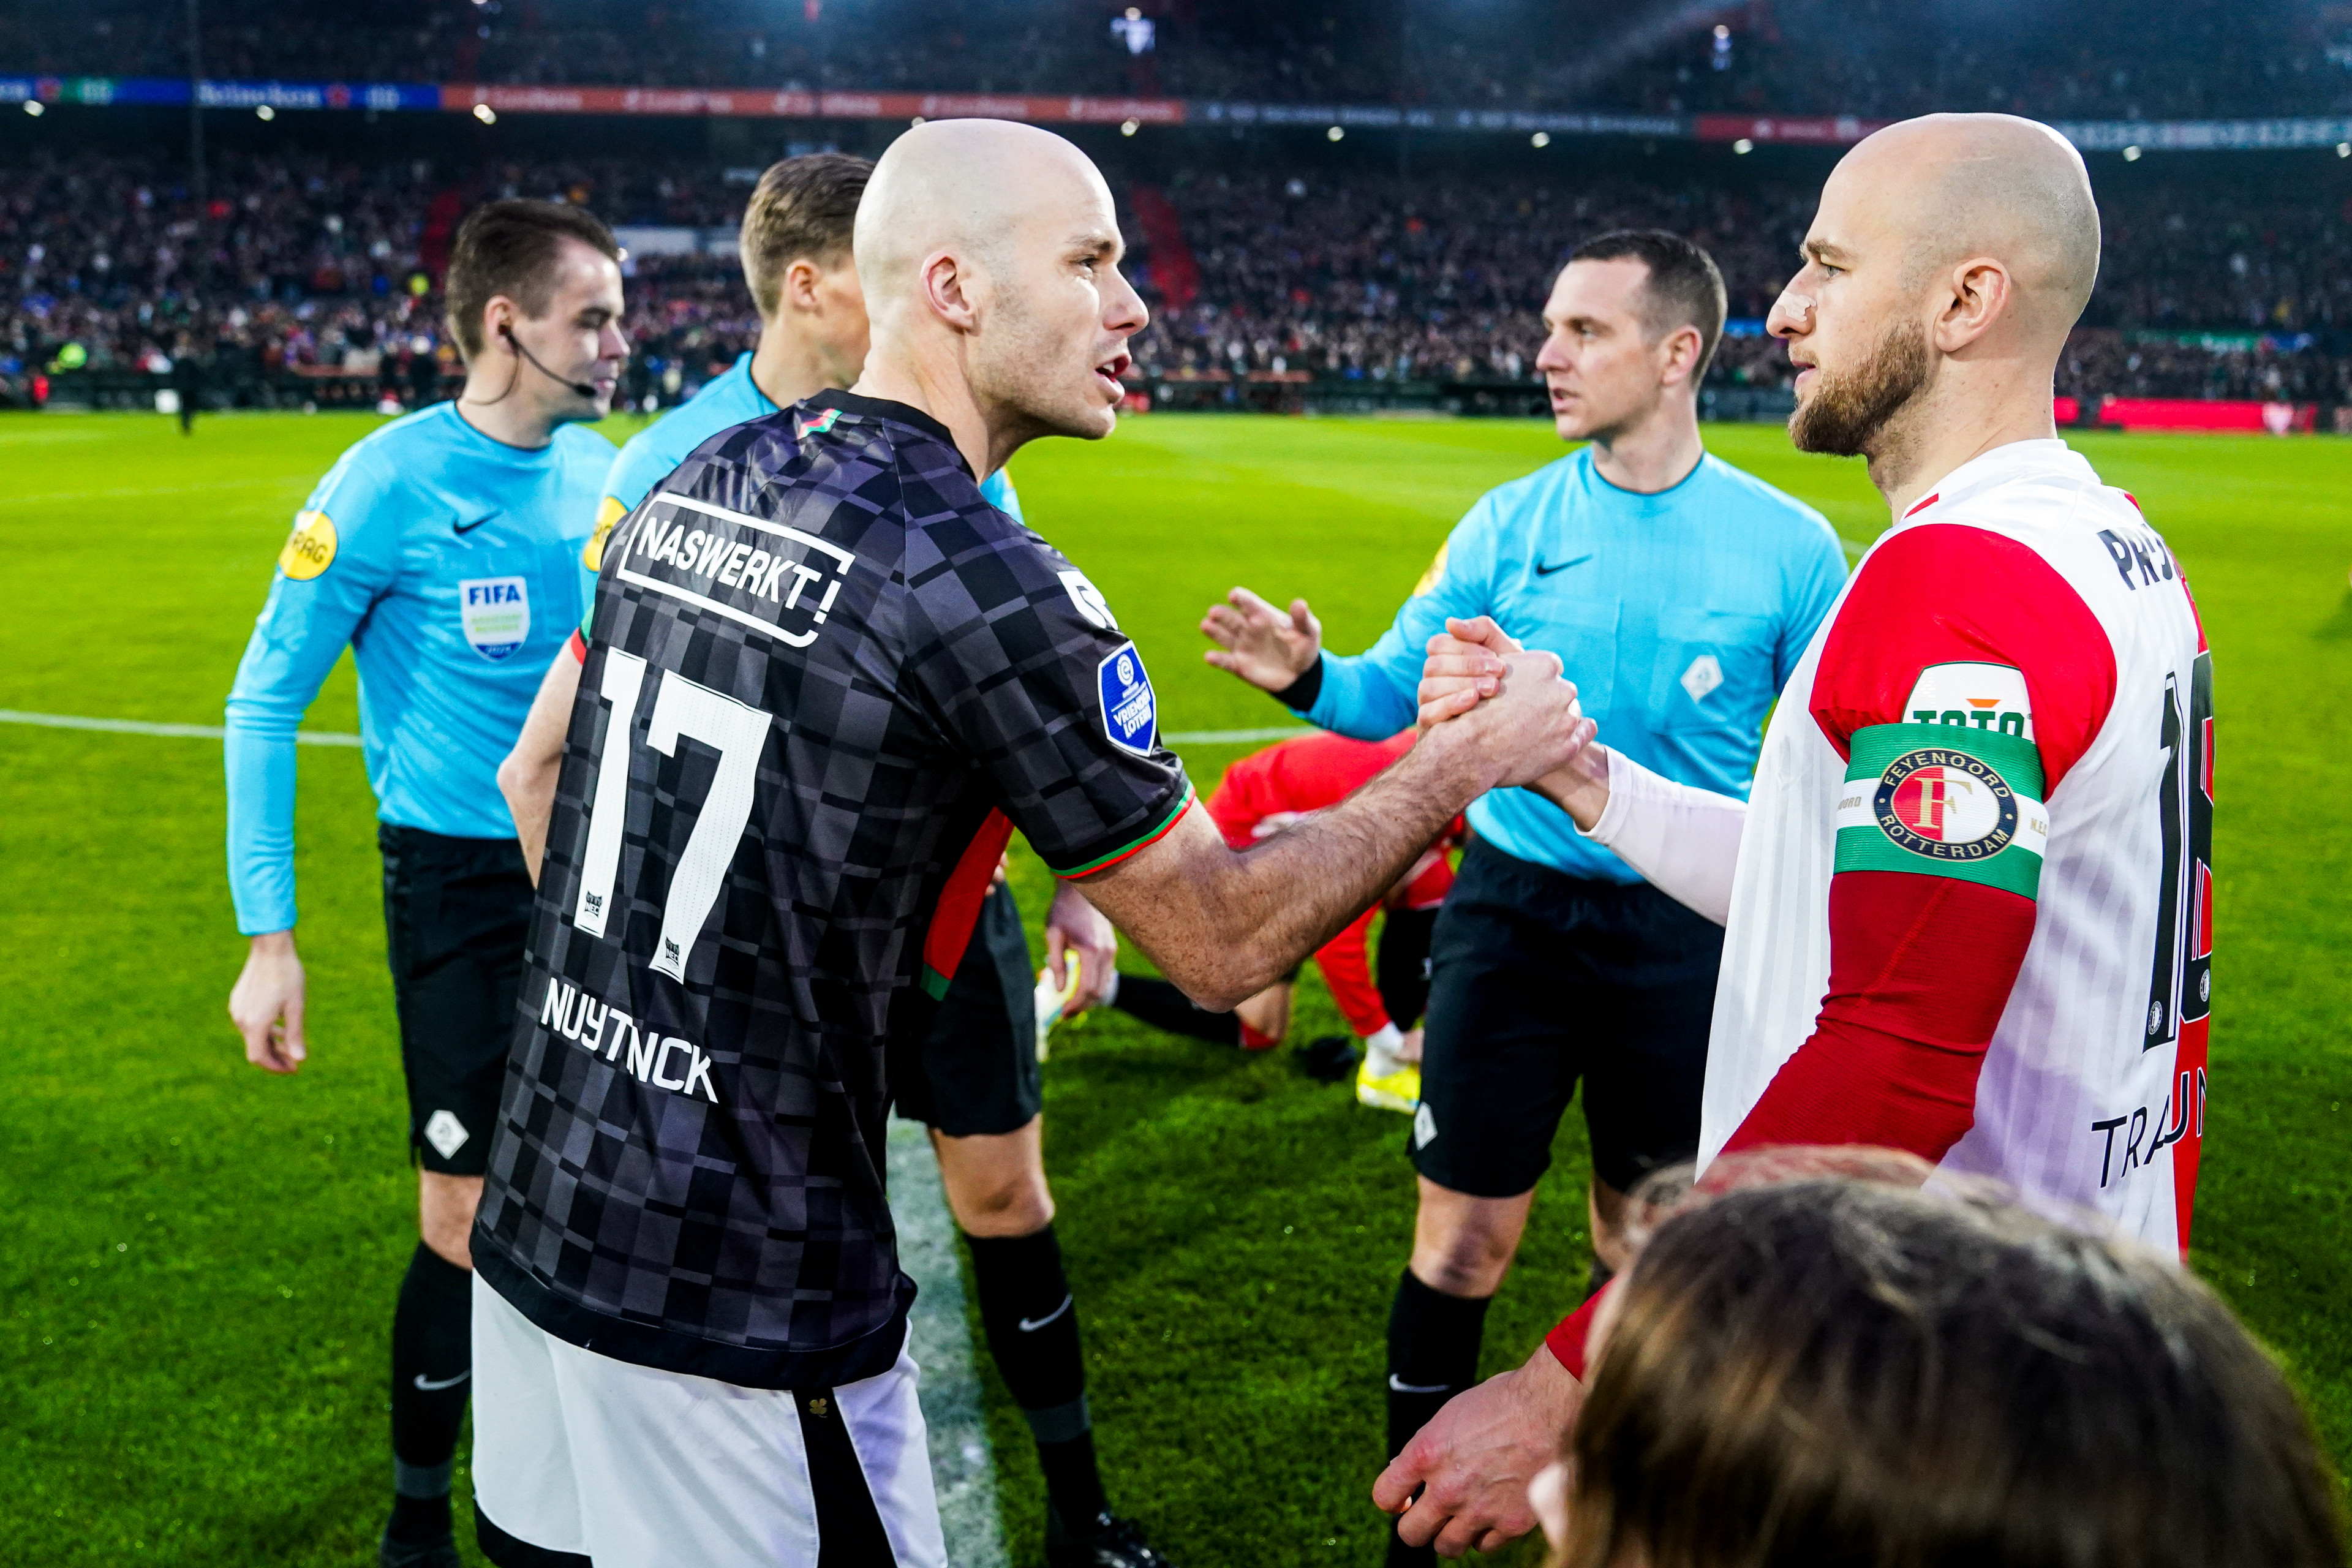 Fulltime • Feyenoord - N.E.C. [2-2]